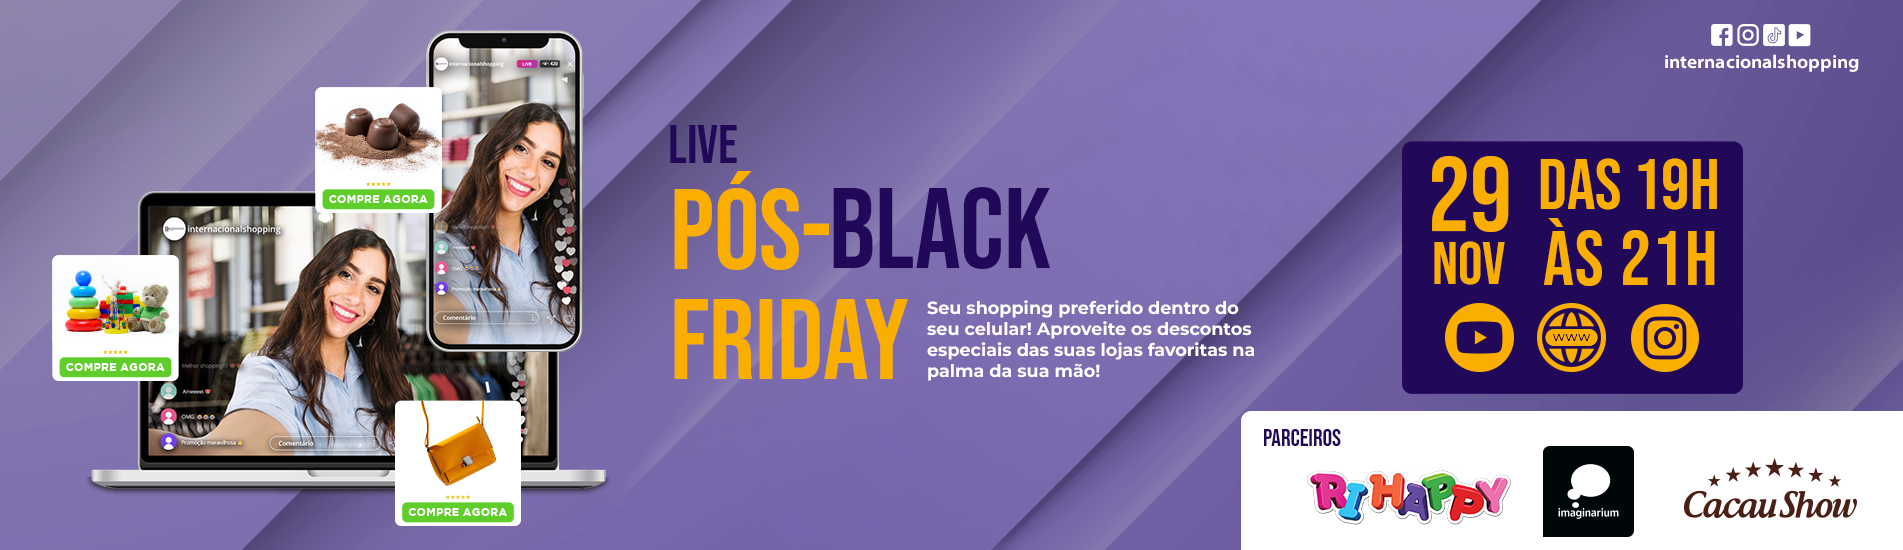 Live Pós-Black Friday do Inter!